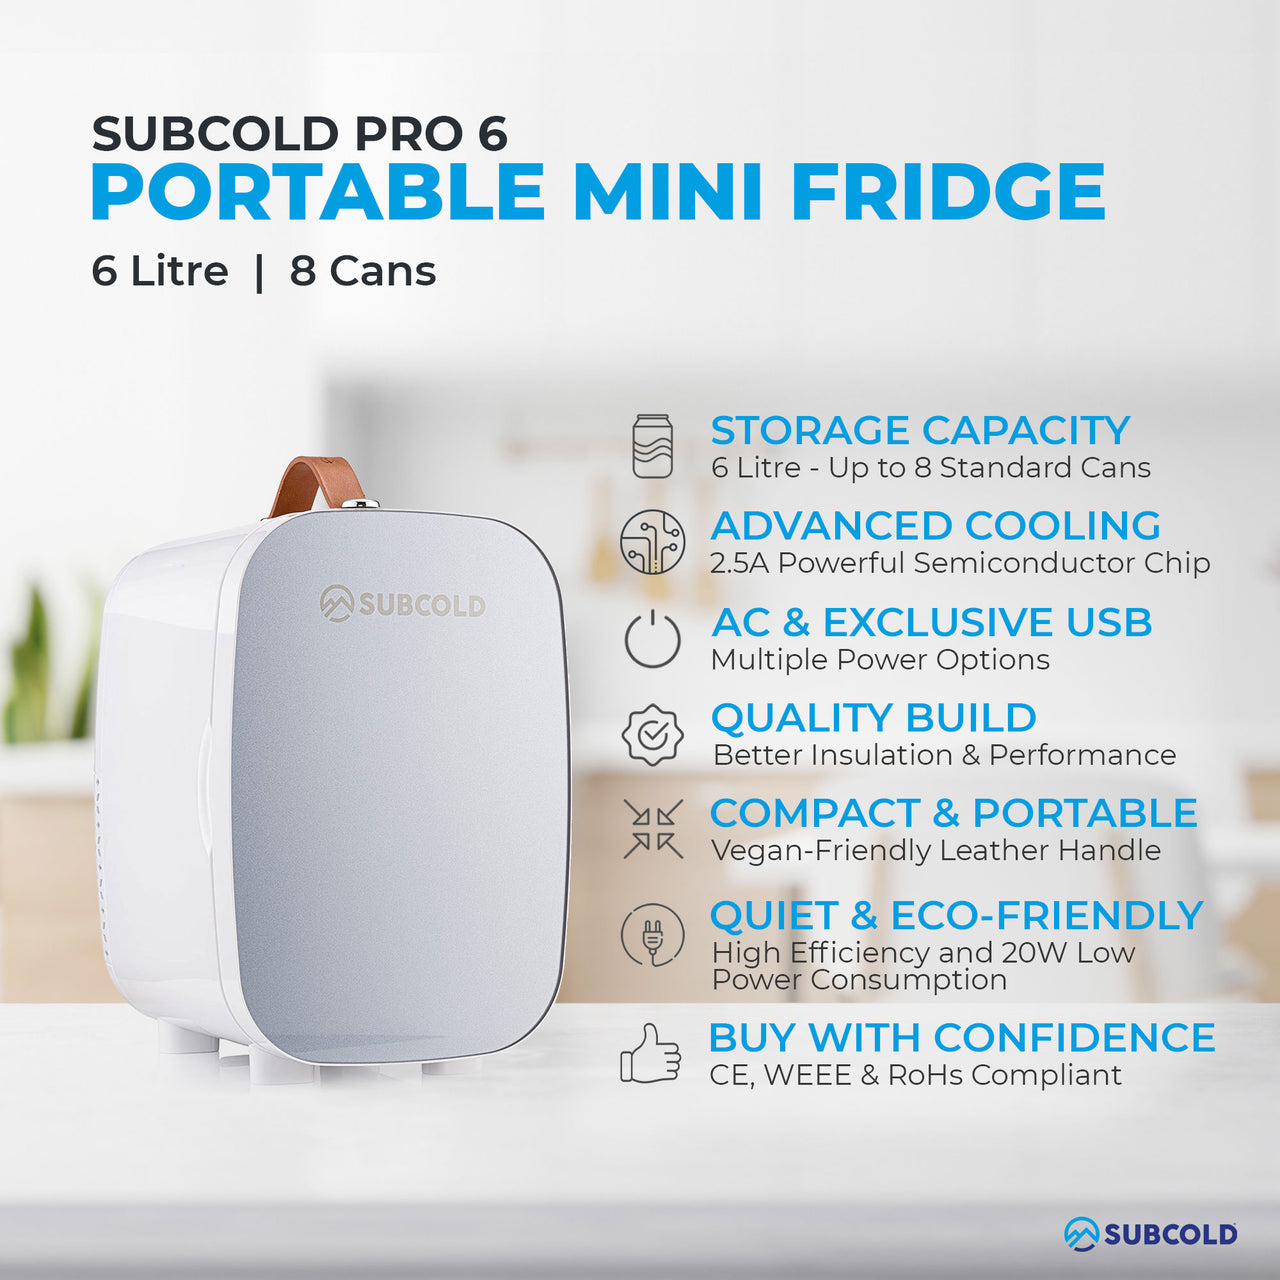 Subcold Pro 6 litre grey mini fridge features infographic